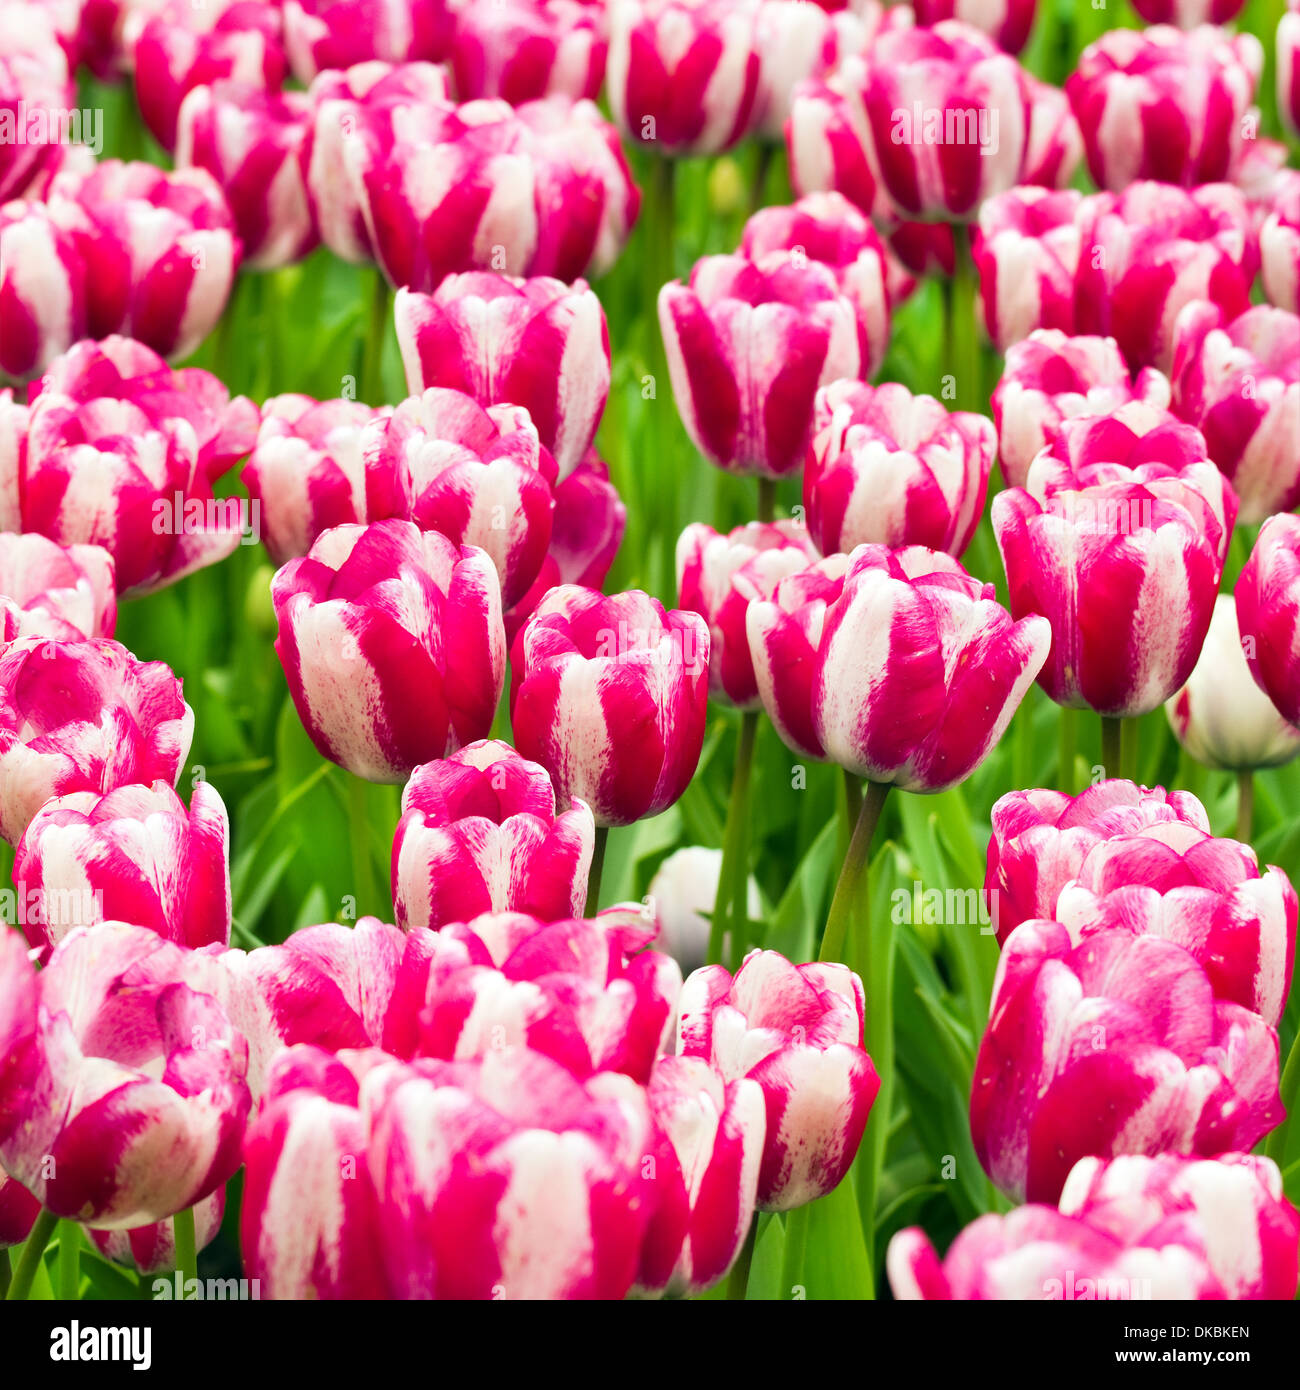 1258128 imágenes de Rayas rosa y blanco  Imágenes fotos y vectores de  stock  Shutterstock